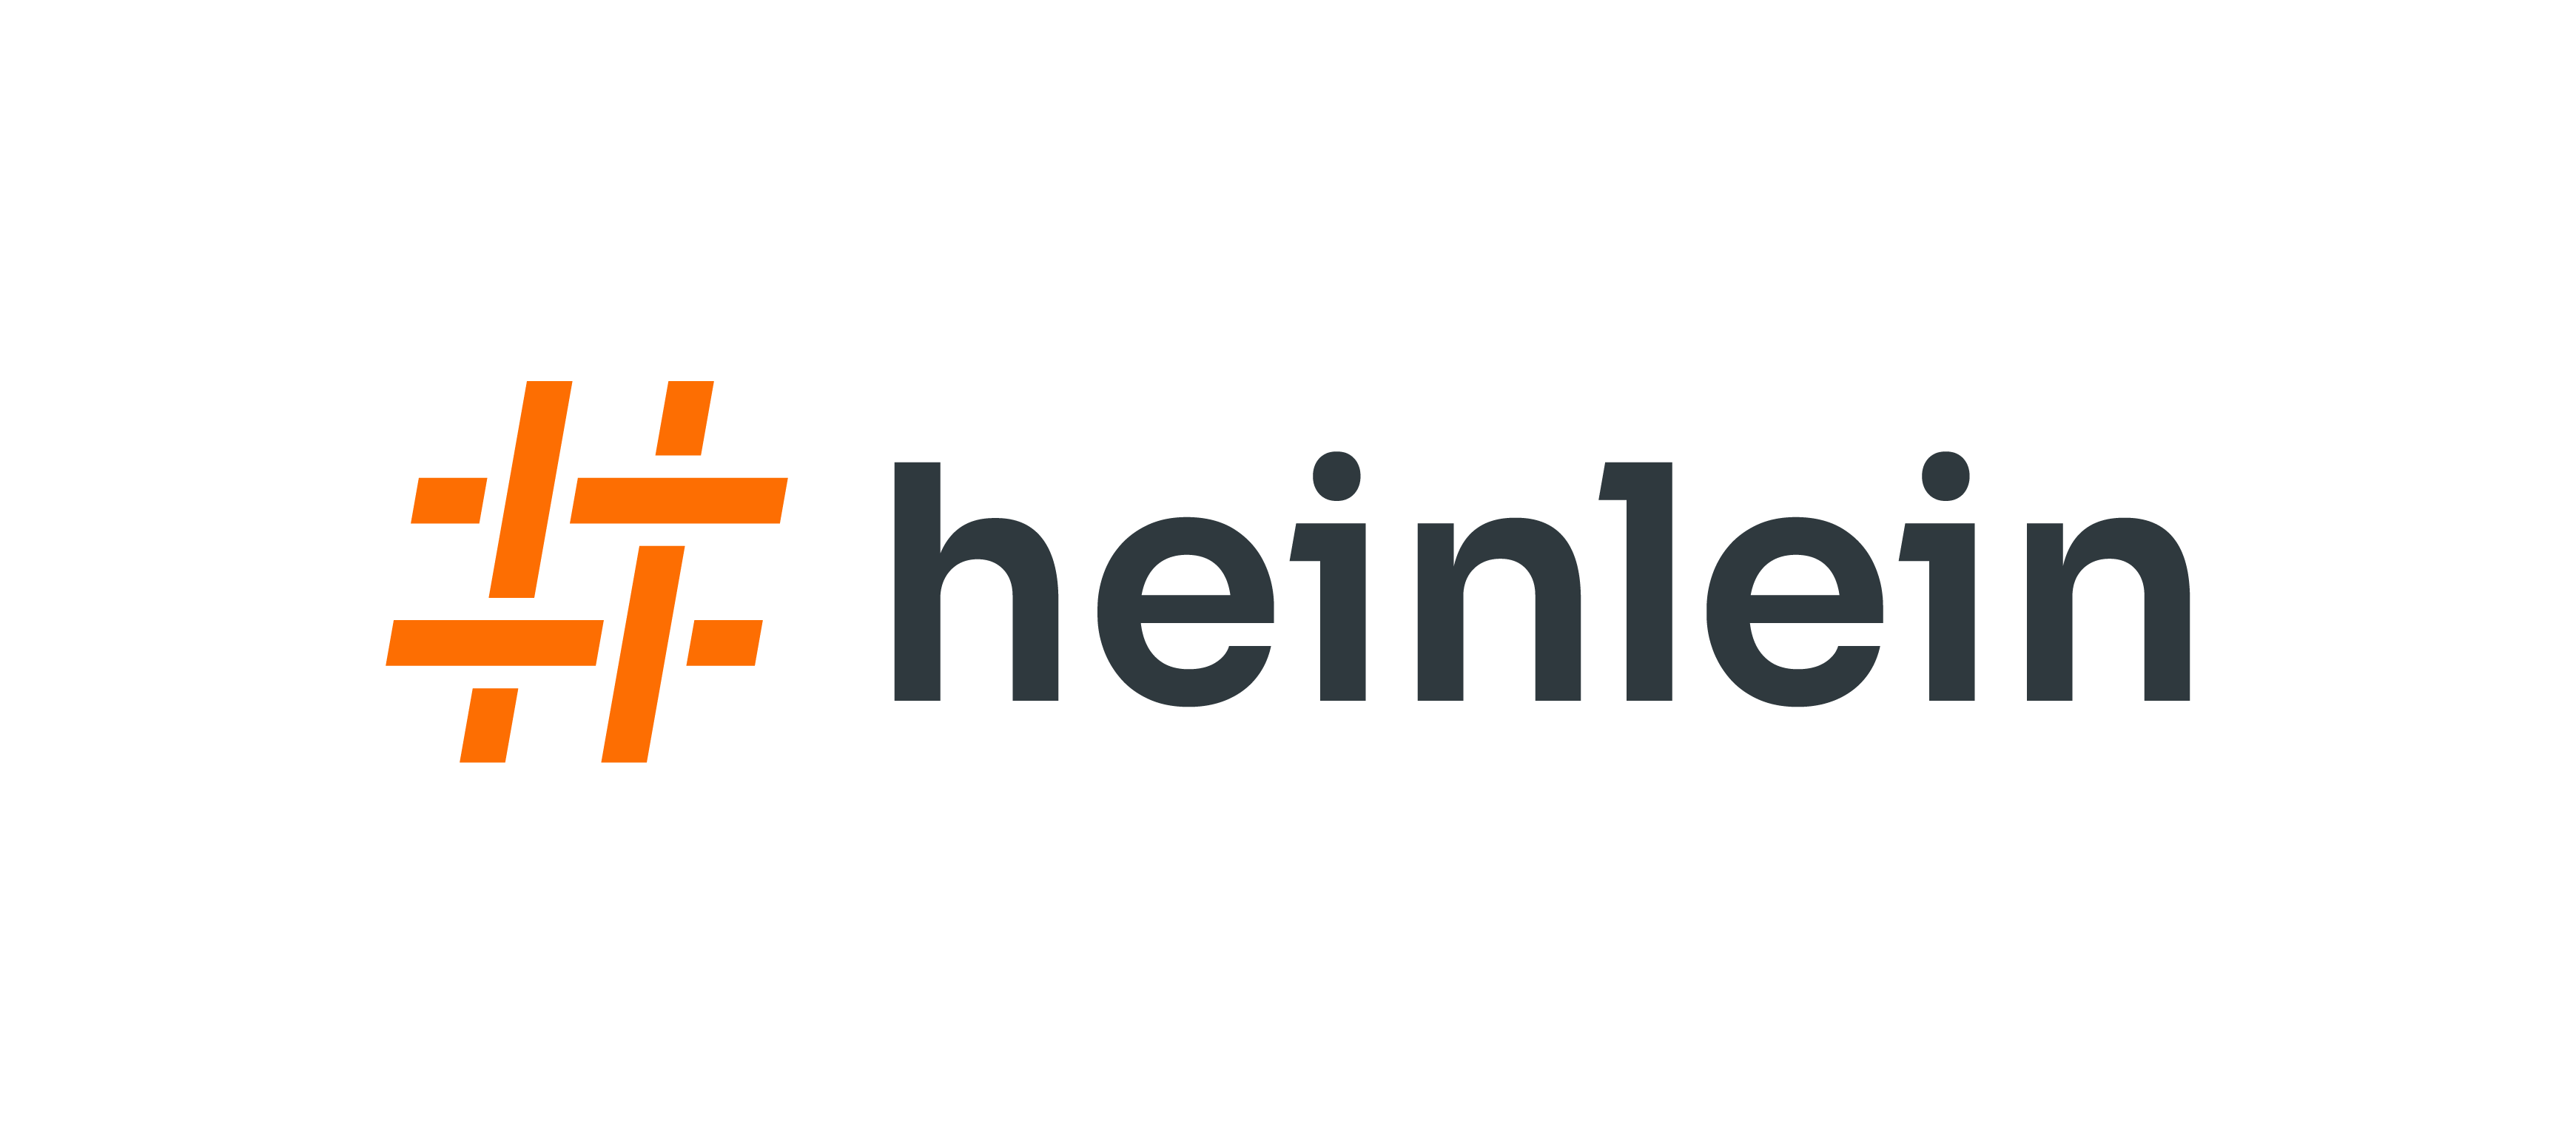 Heinlein Support GmbH